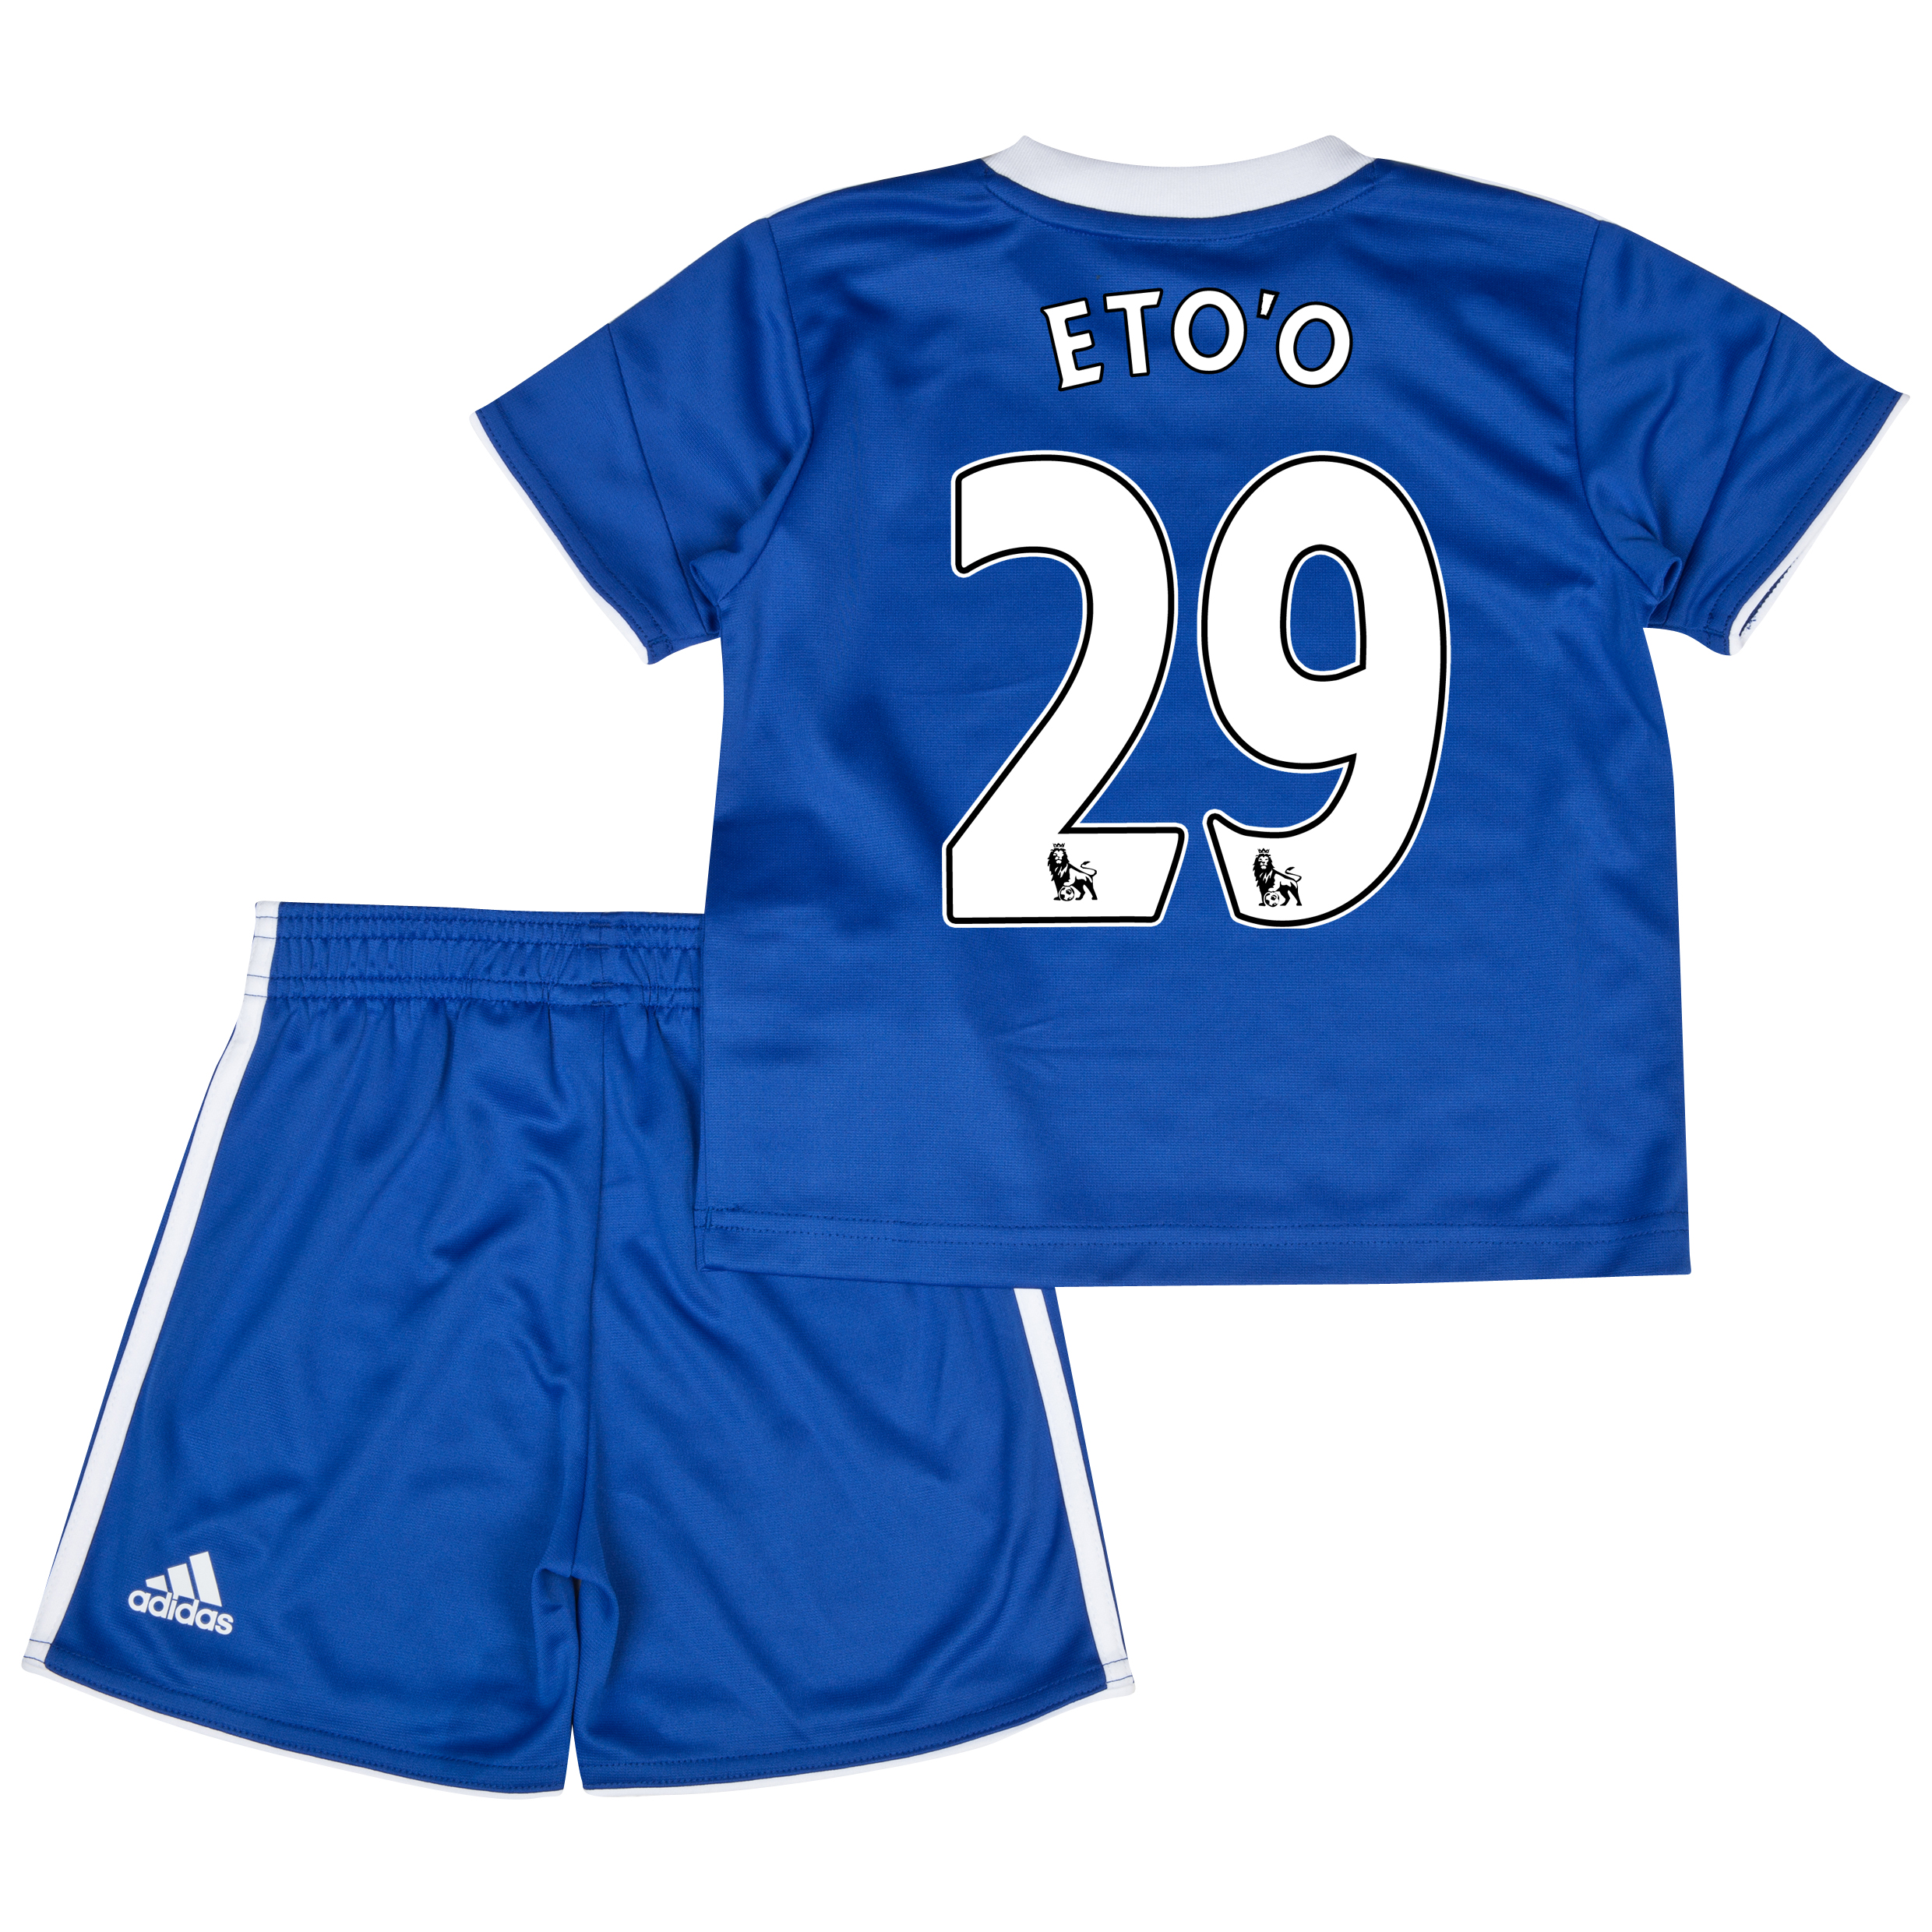 Chelsea Home Mini Kit 2013/14 with Eto'o 29 printing